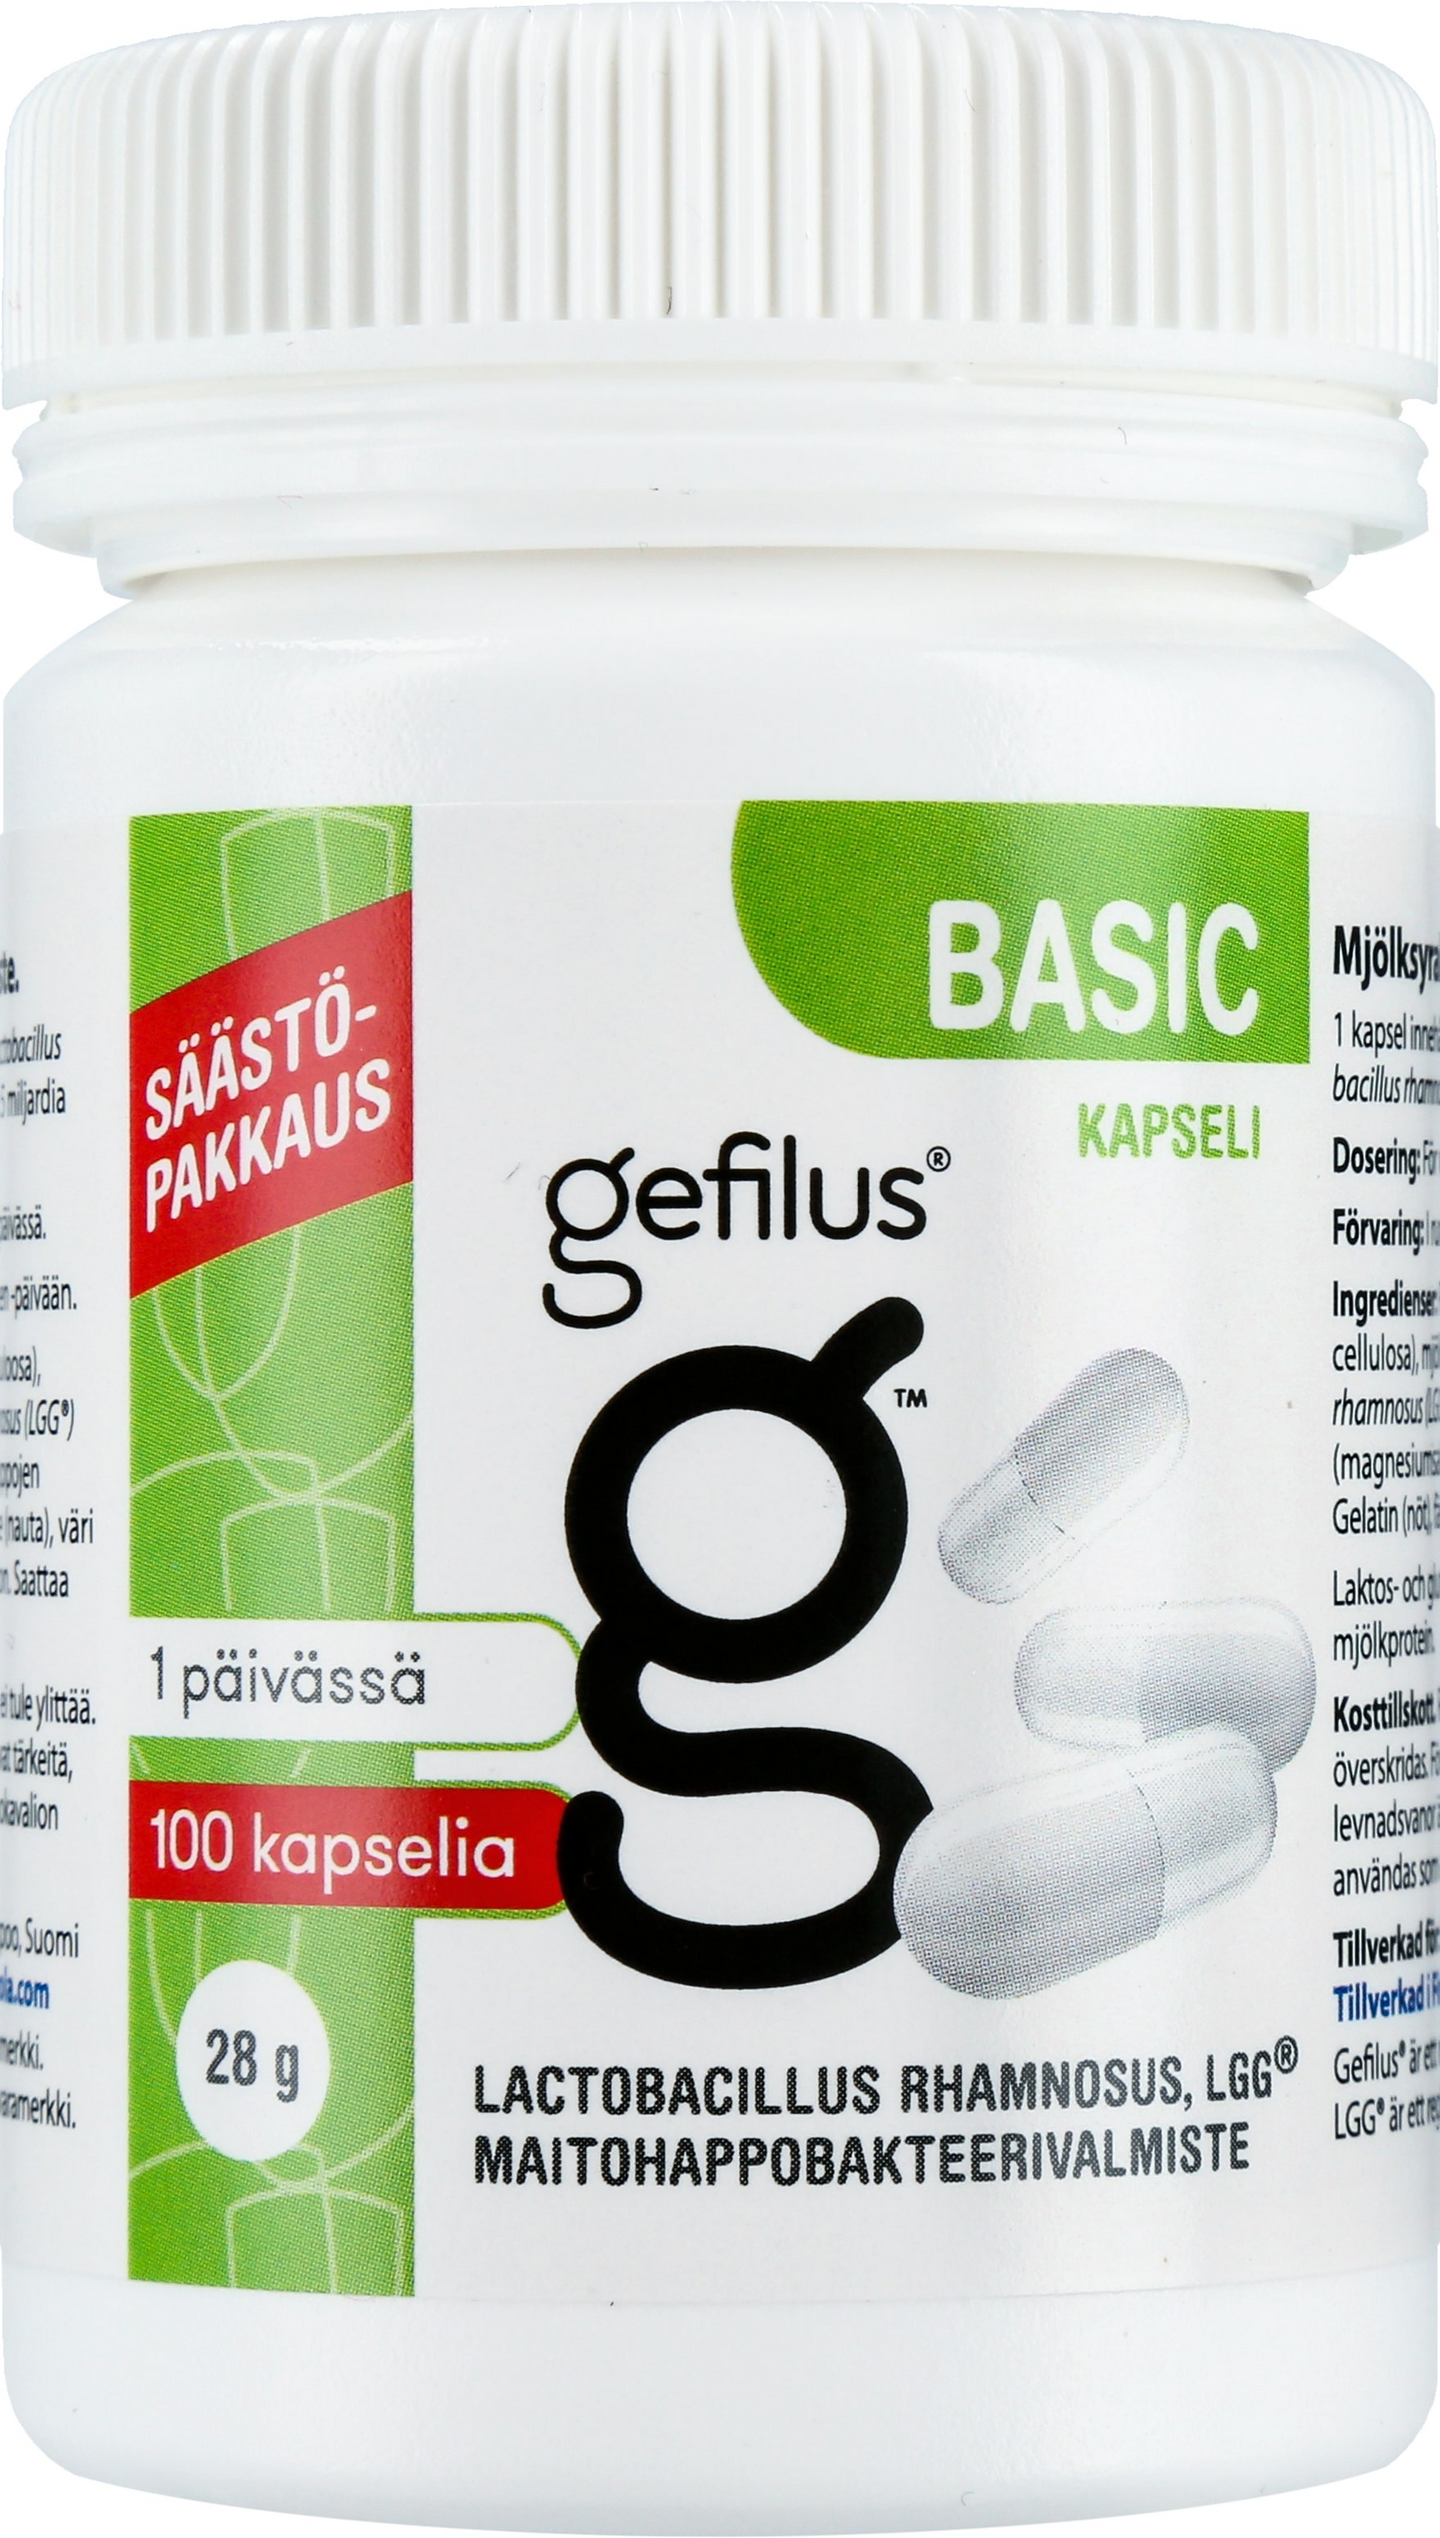 Gefilus Basic maitohappobakteeri 100kapselia 28g